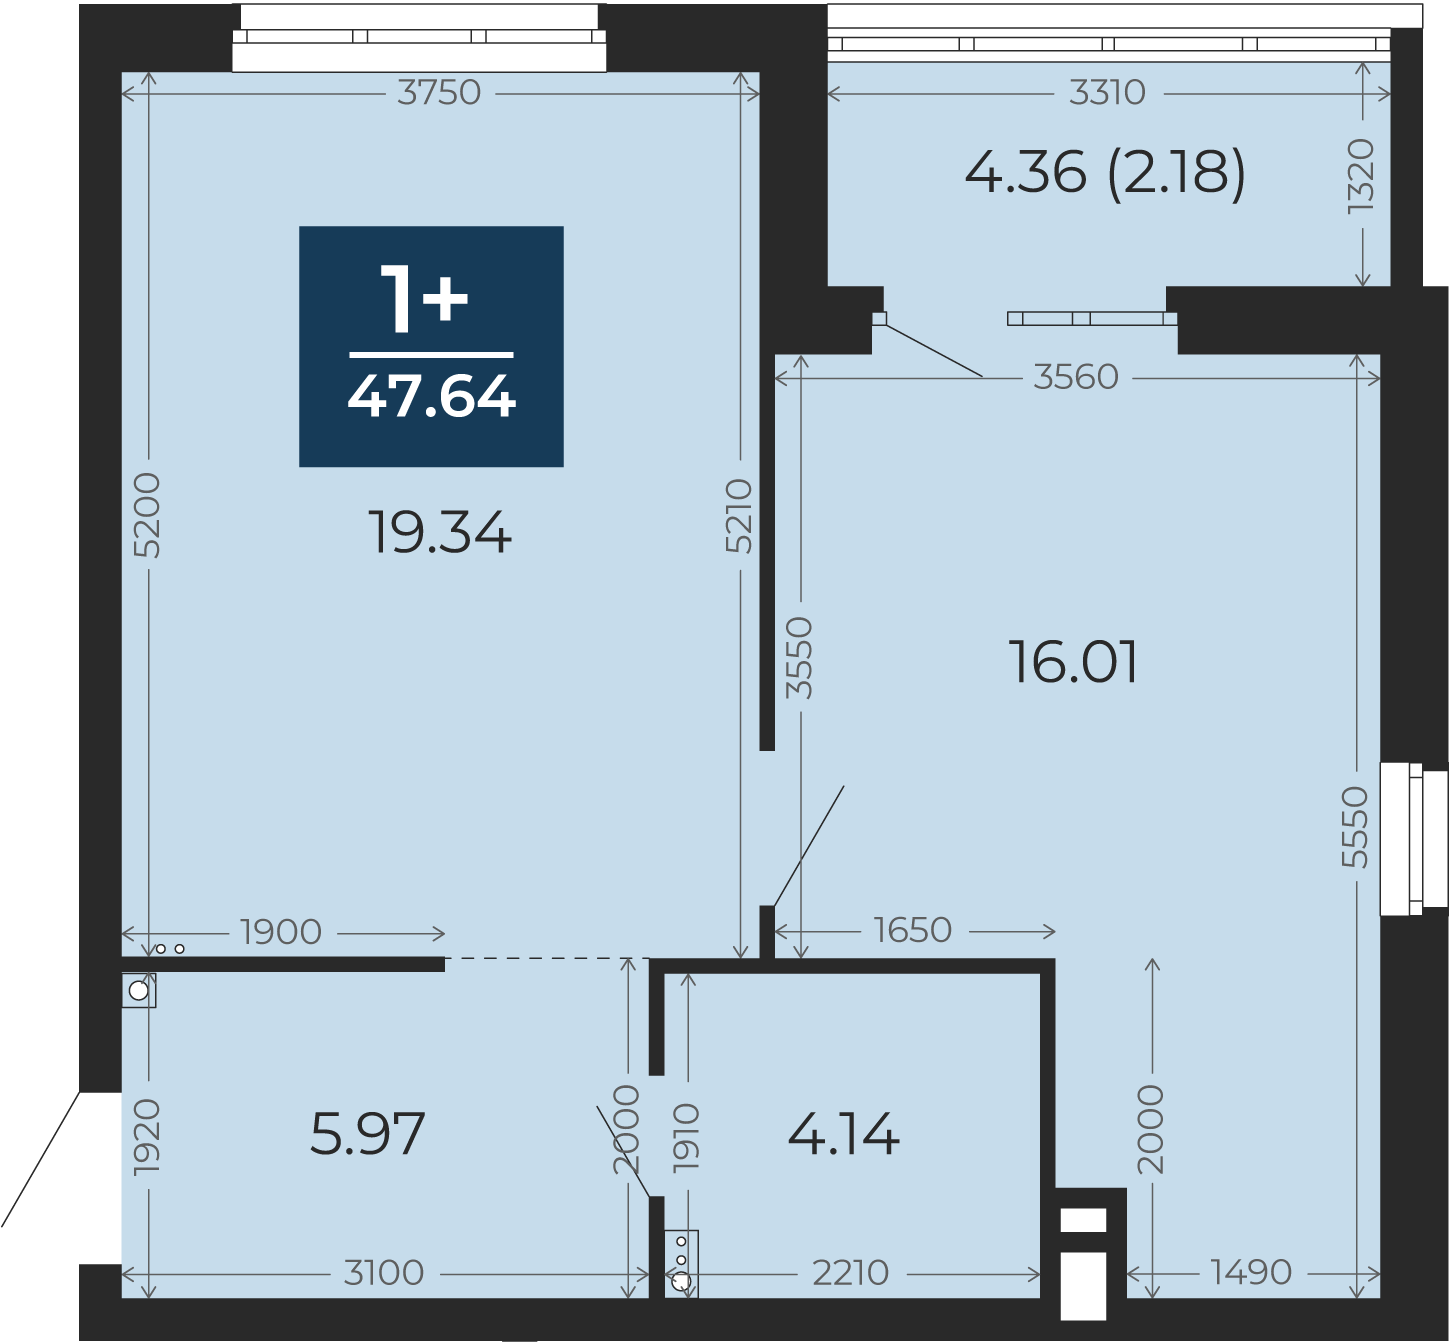 Квартира № 292, 1-комнатная, 47.64 кв. м, 2 этаж